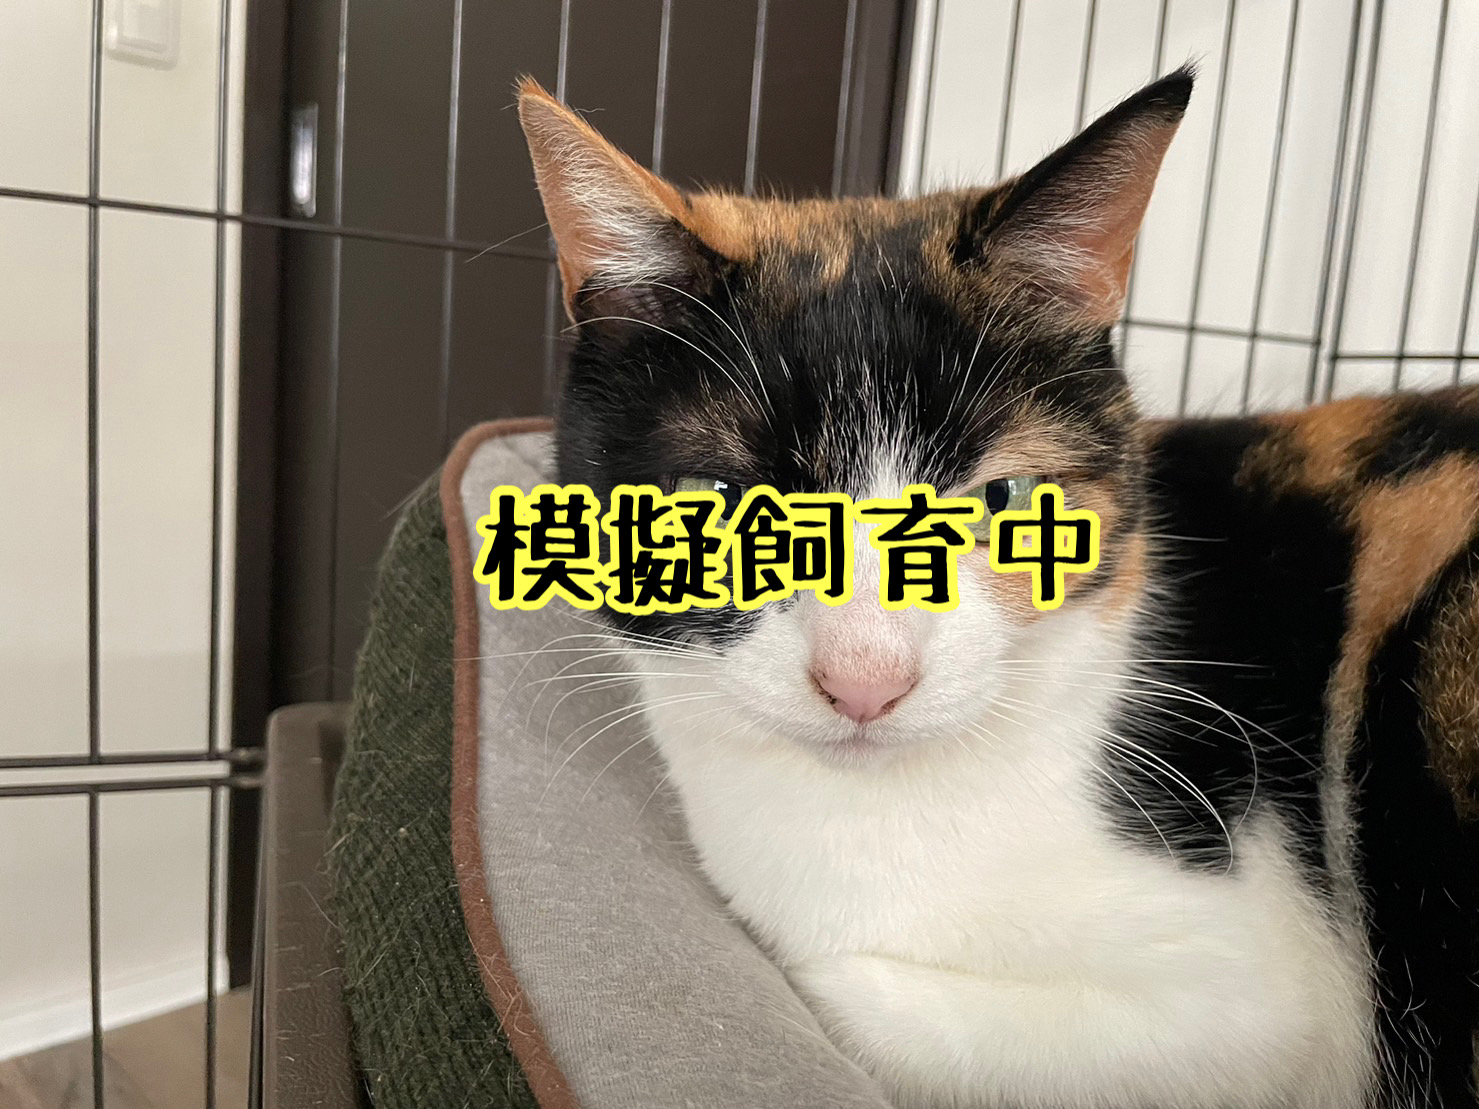 <ul>
<li>猫種：日本猫</li>
<li>名前（性別）：くり(女の子)</li>
<li>年齢：2012年9月頃生まれ</li>
<li>保護経緯：飼い主が高齢になり介護施設入居のため飼育困難</li>
</ul>
